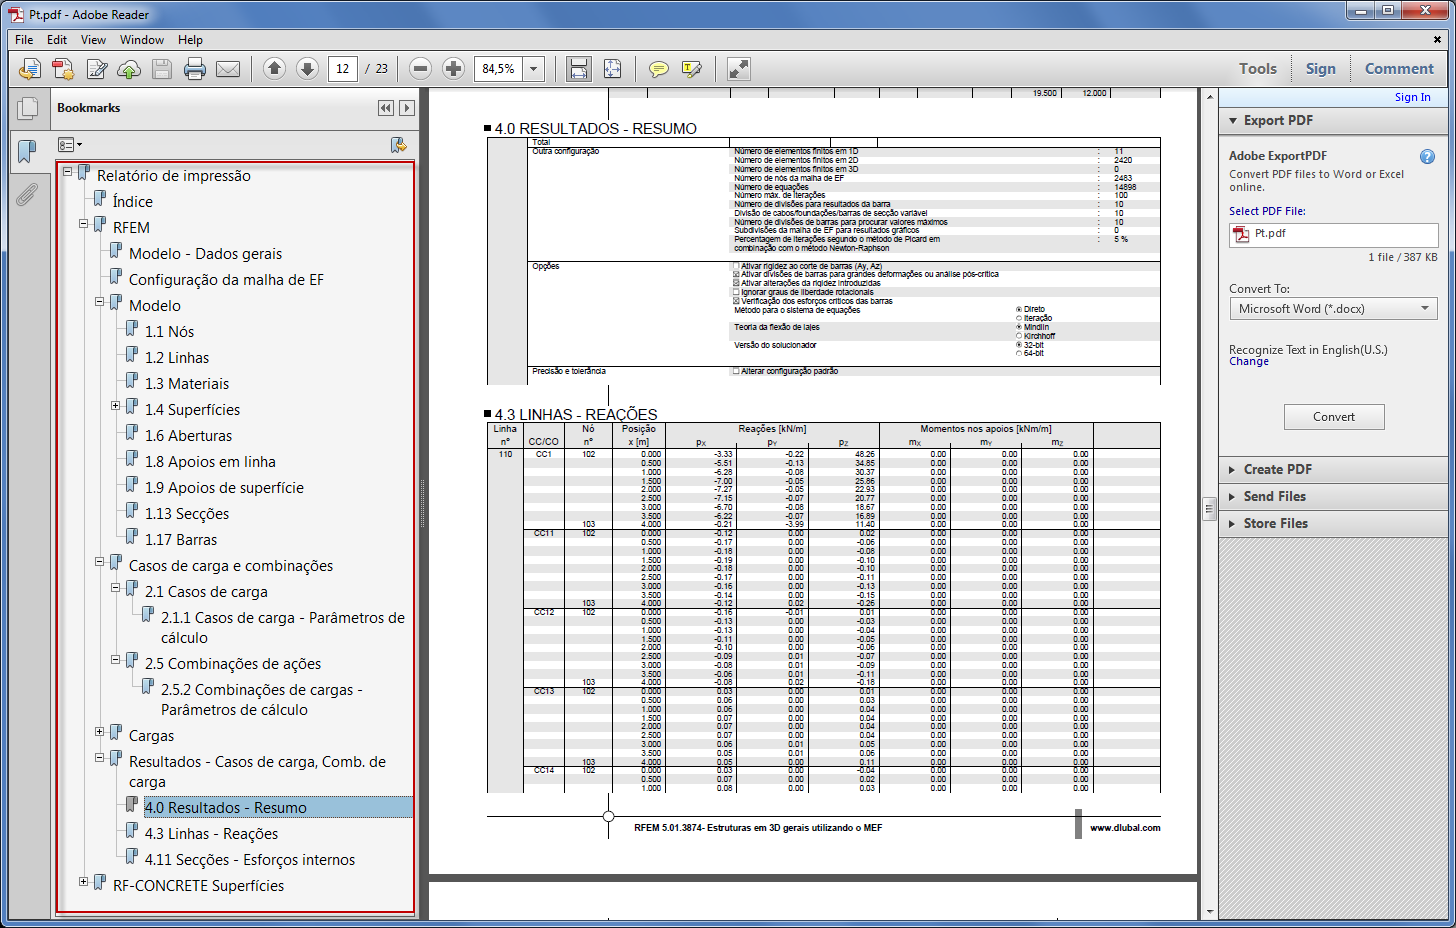 Exportar PDF do relatório de impressão